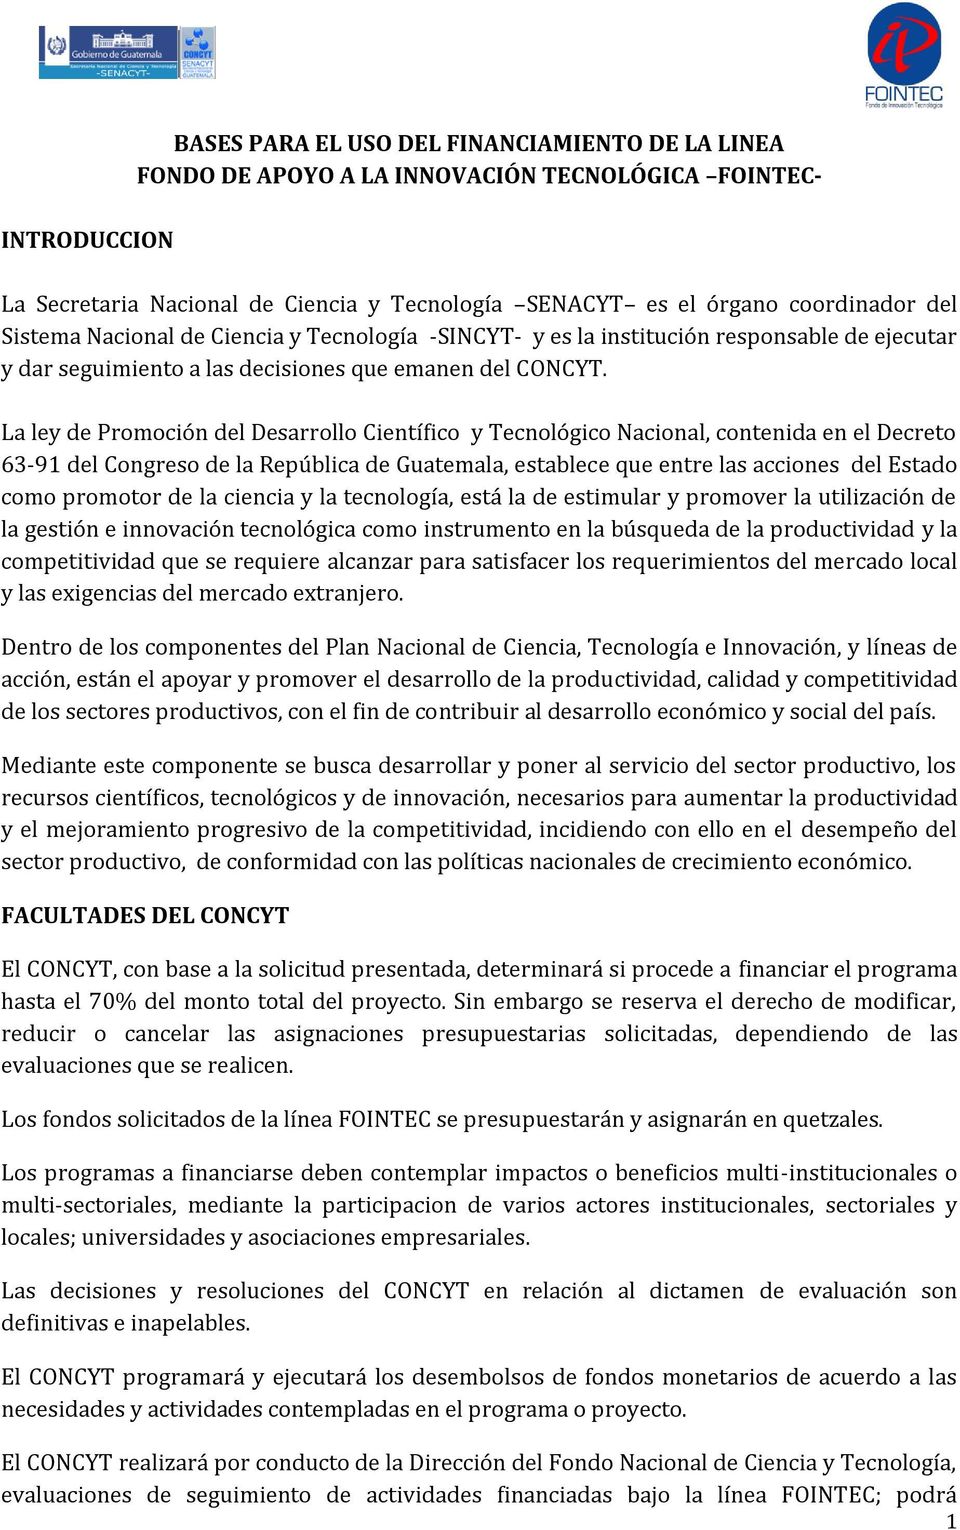 La ley de Promoción del Desarrollo Científico y Tecnológico Nacional, contenida en el Decreto 63-91 del Congreso de la República de Guatemala, establece que entre las acciones del Estado como